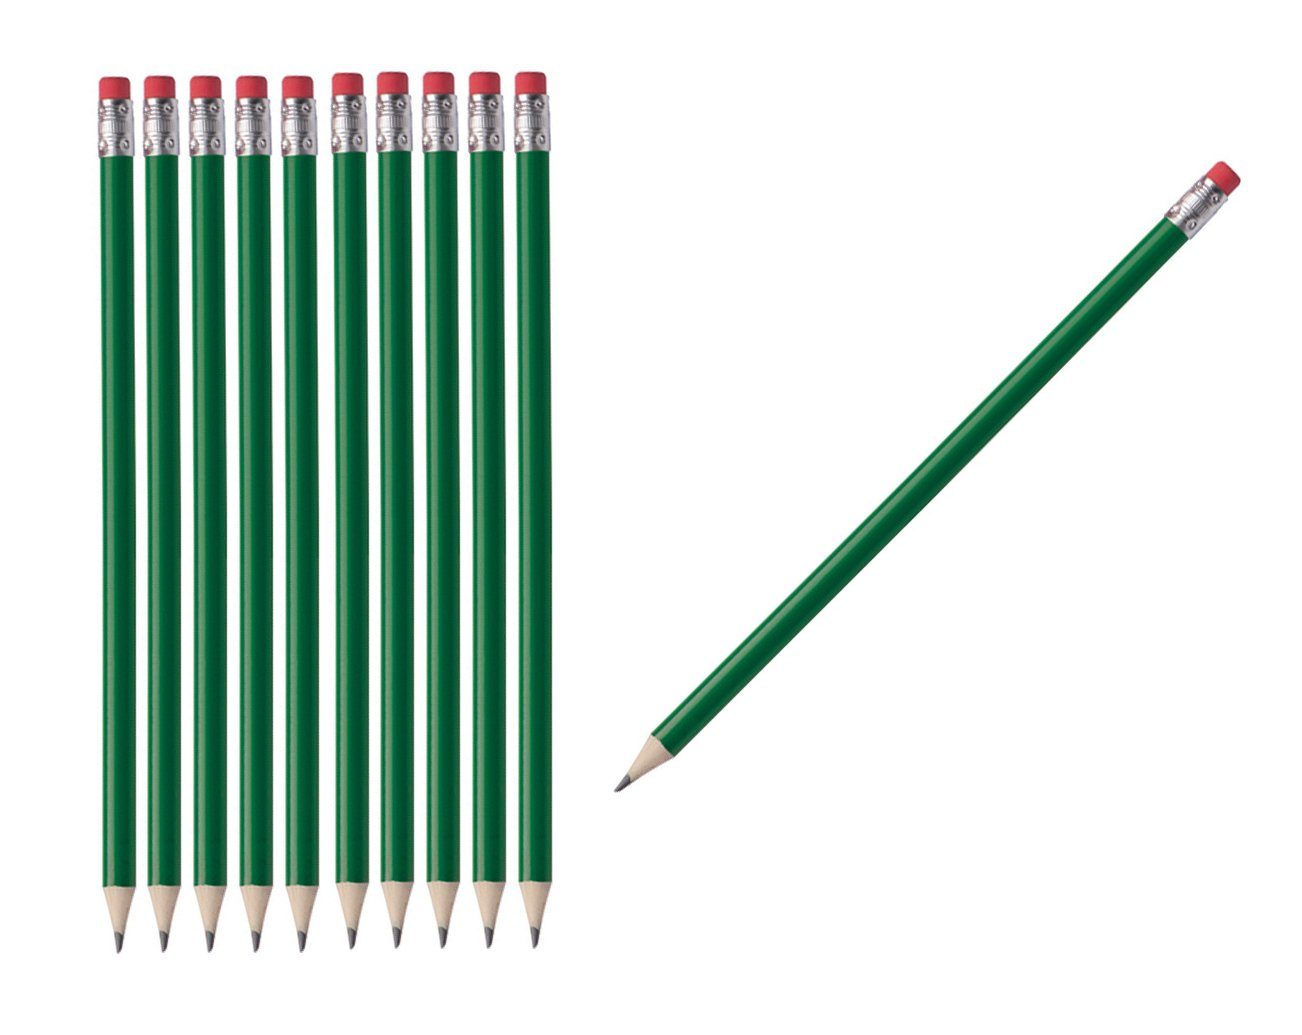 Livepac Office Bleistift 50 Bleistifte mit Radierer / HB / ohne Herstellerlogo / Farbe: lackier